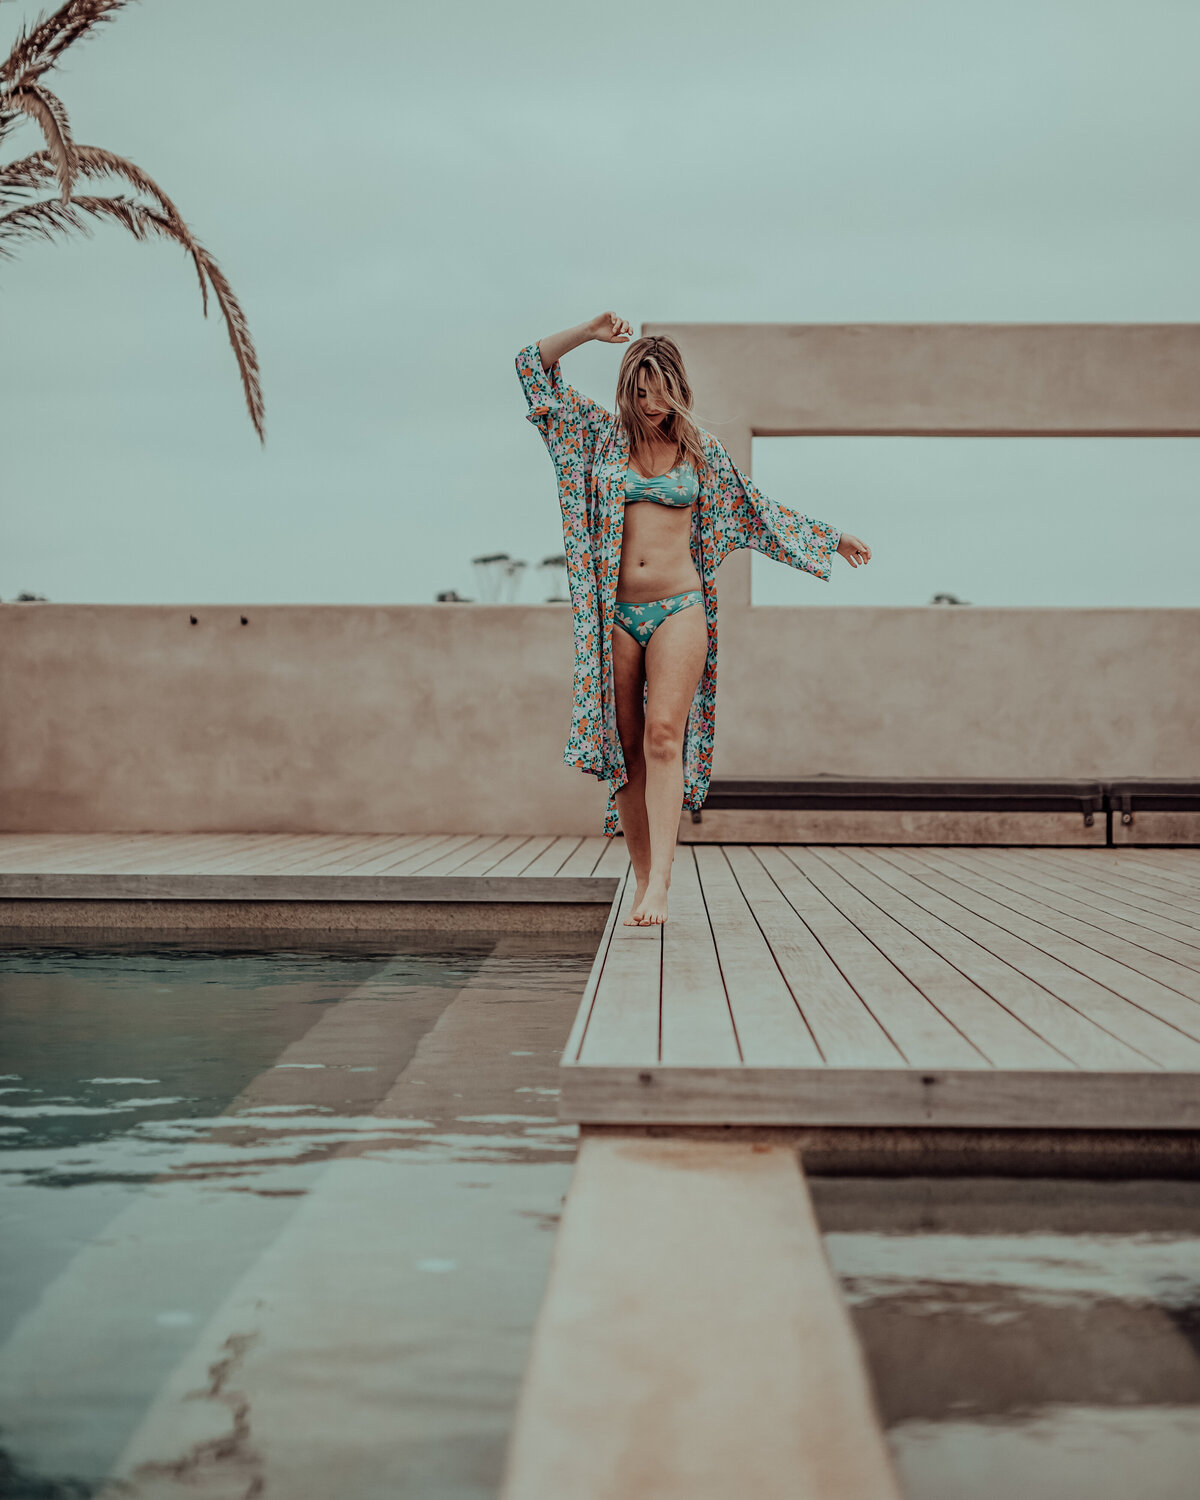 Poolside glamour with model wearing bikini